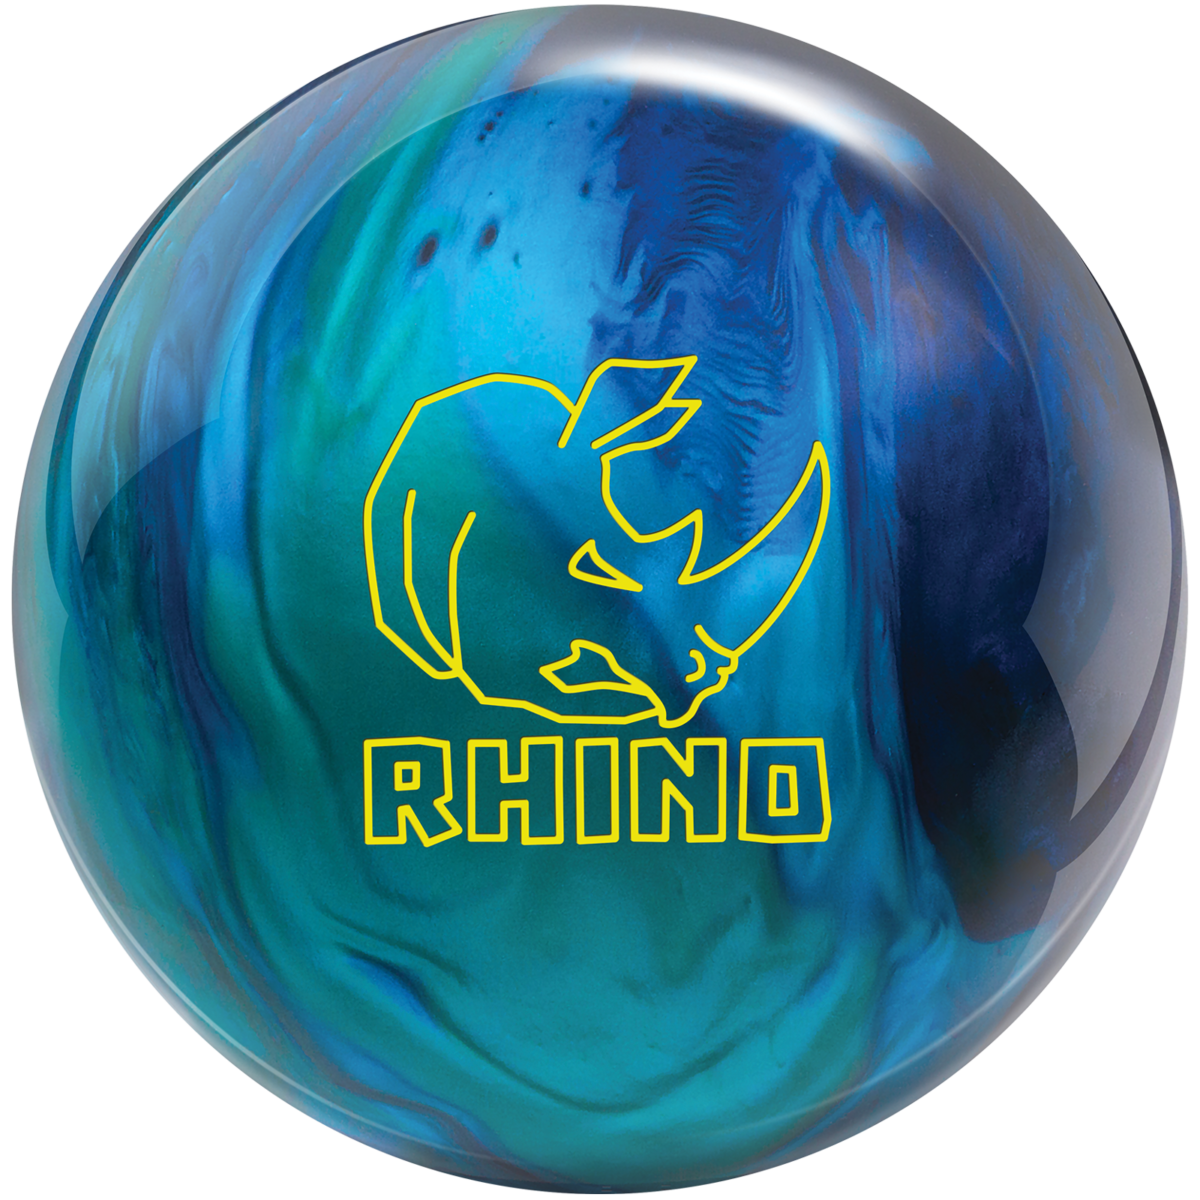 Brunswick Rhino 10 LB Black Blue Silver Bowling Ball NIB 1st Quality 